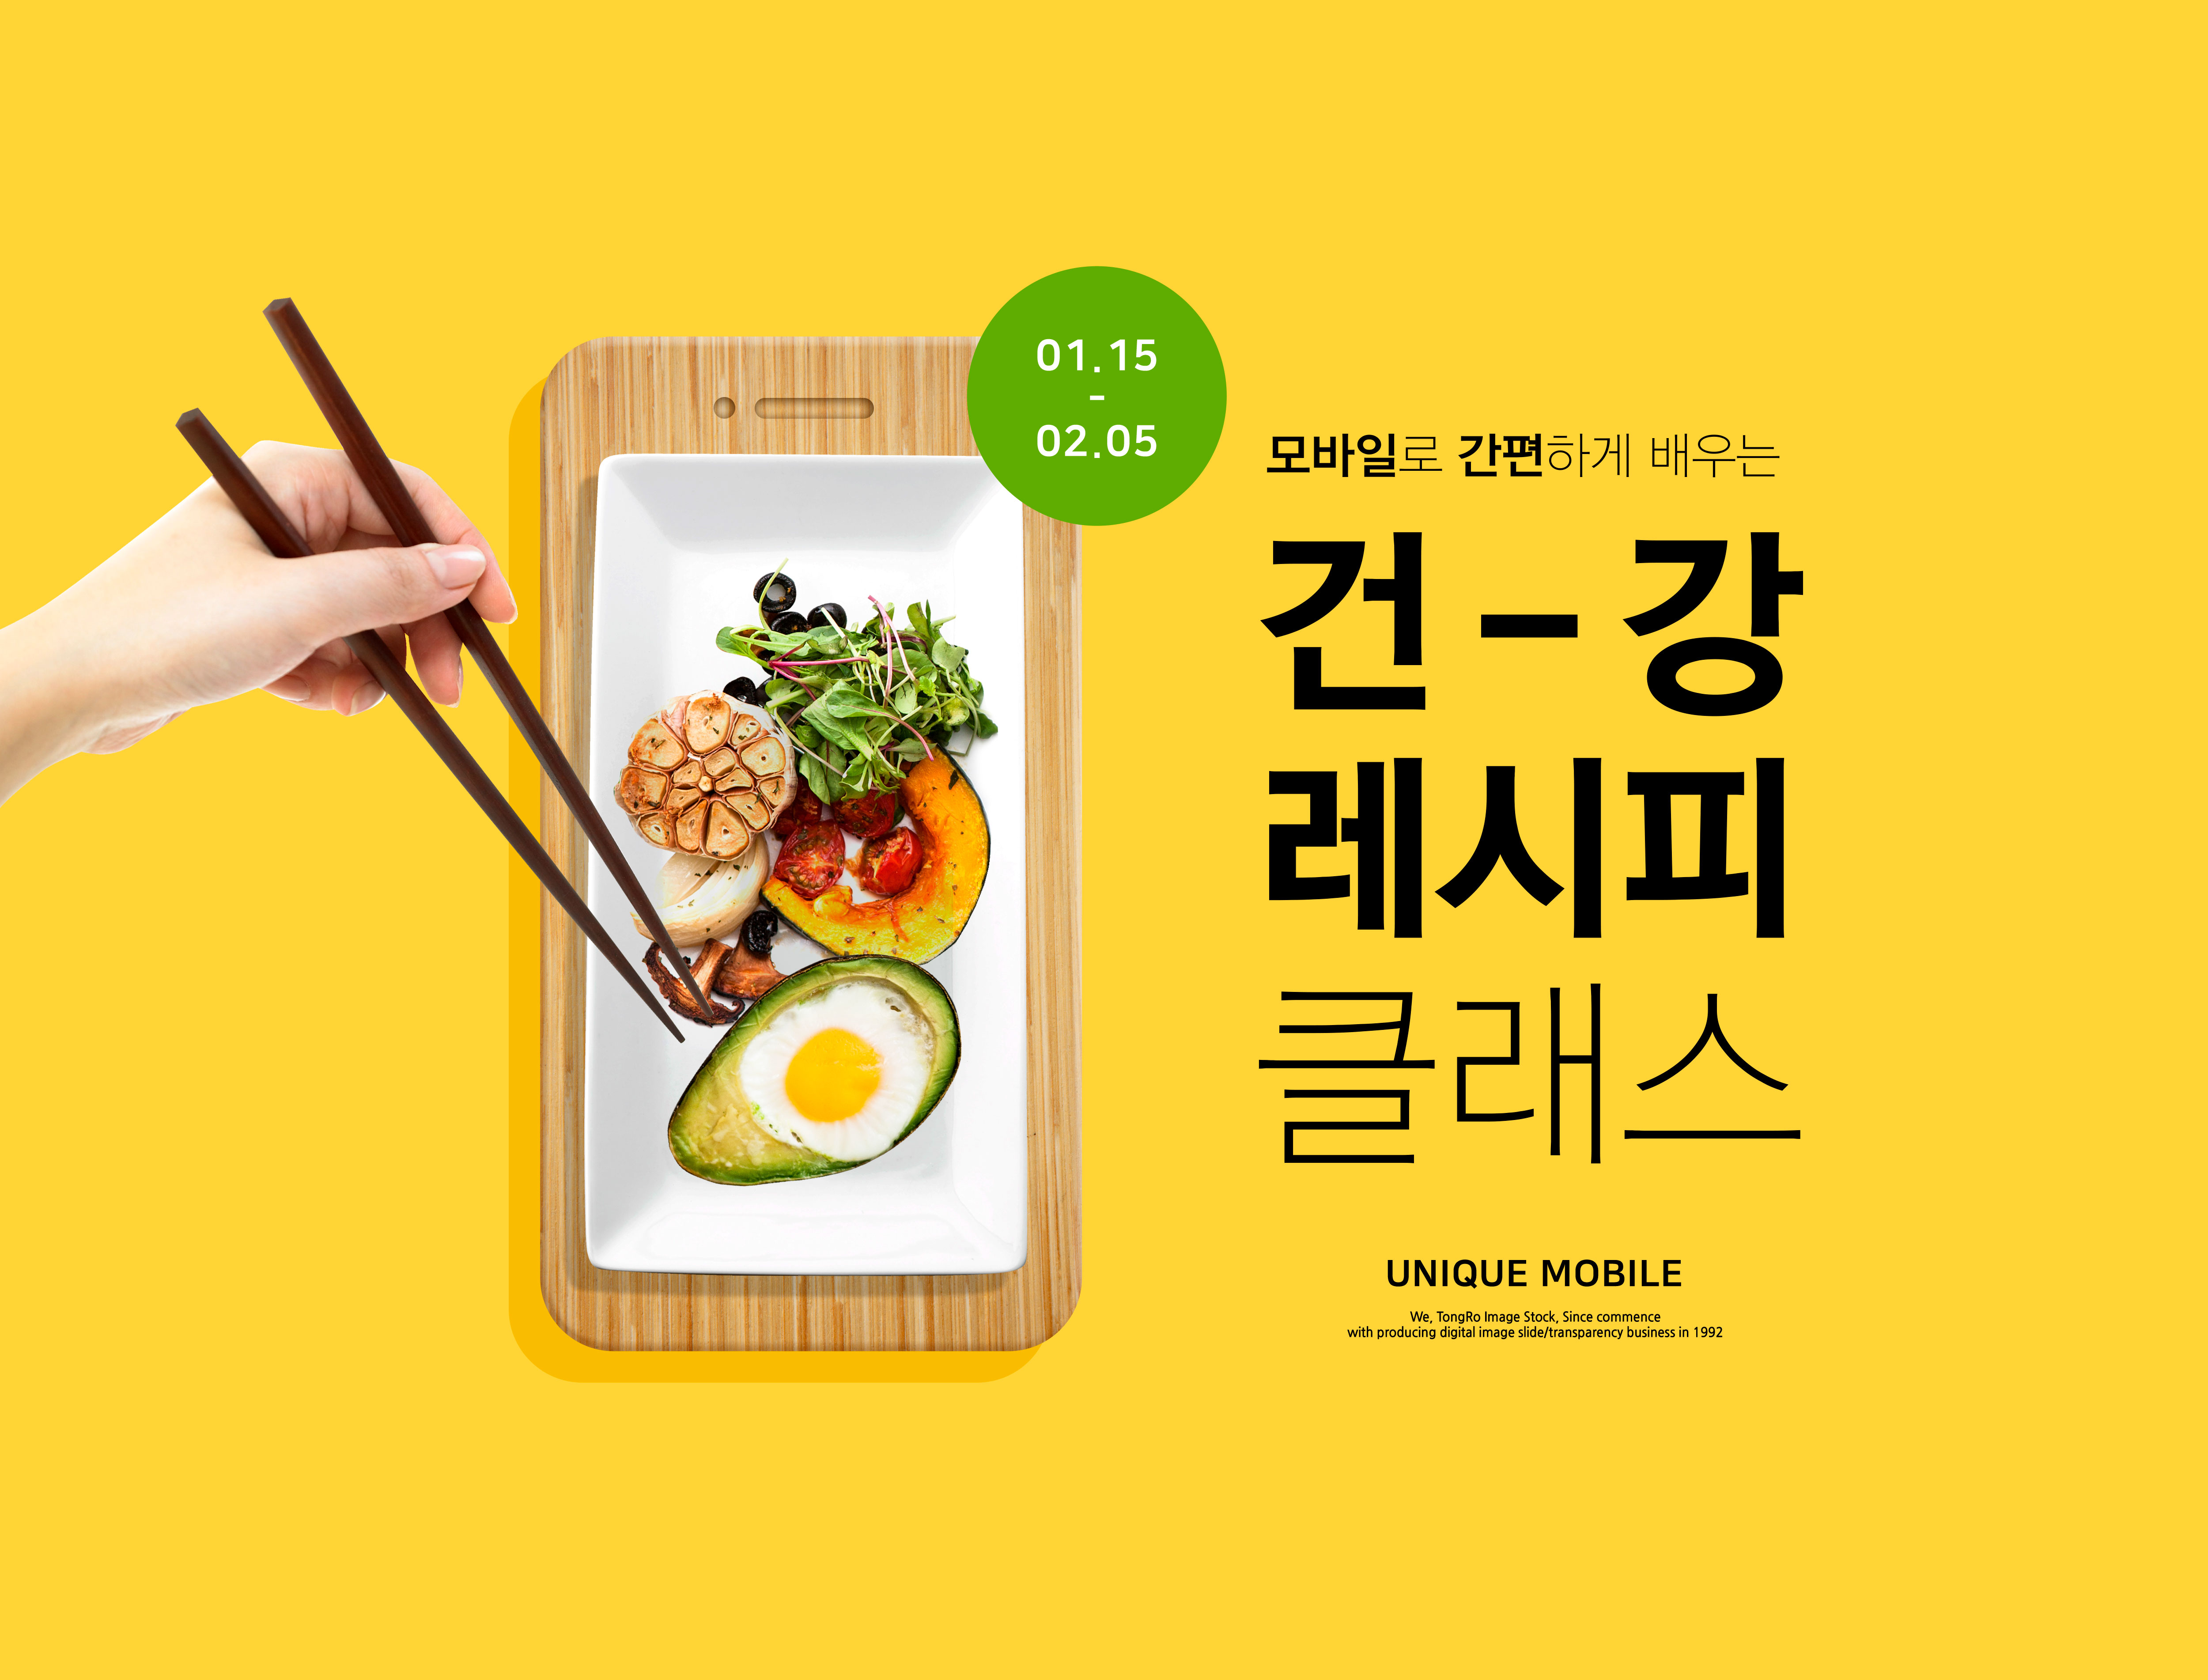 健康食谱饮食烹饪课程教学海报PSD素材16设计网精选韩国素材插图